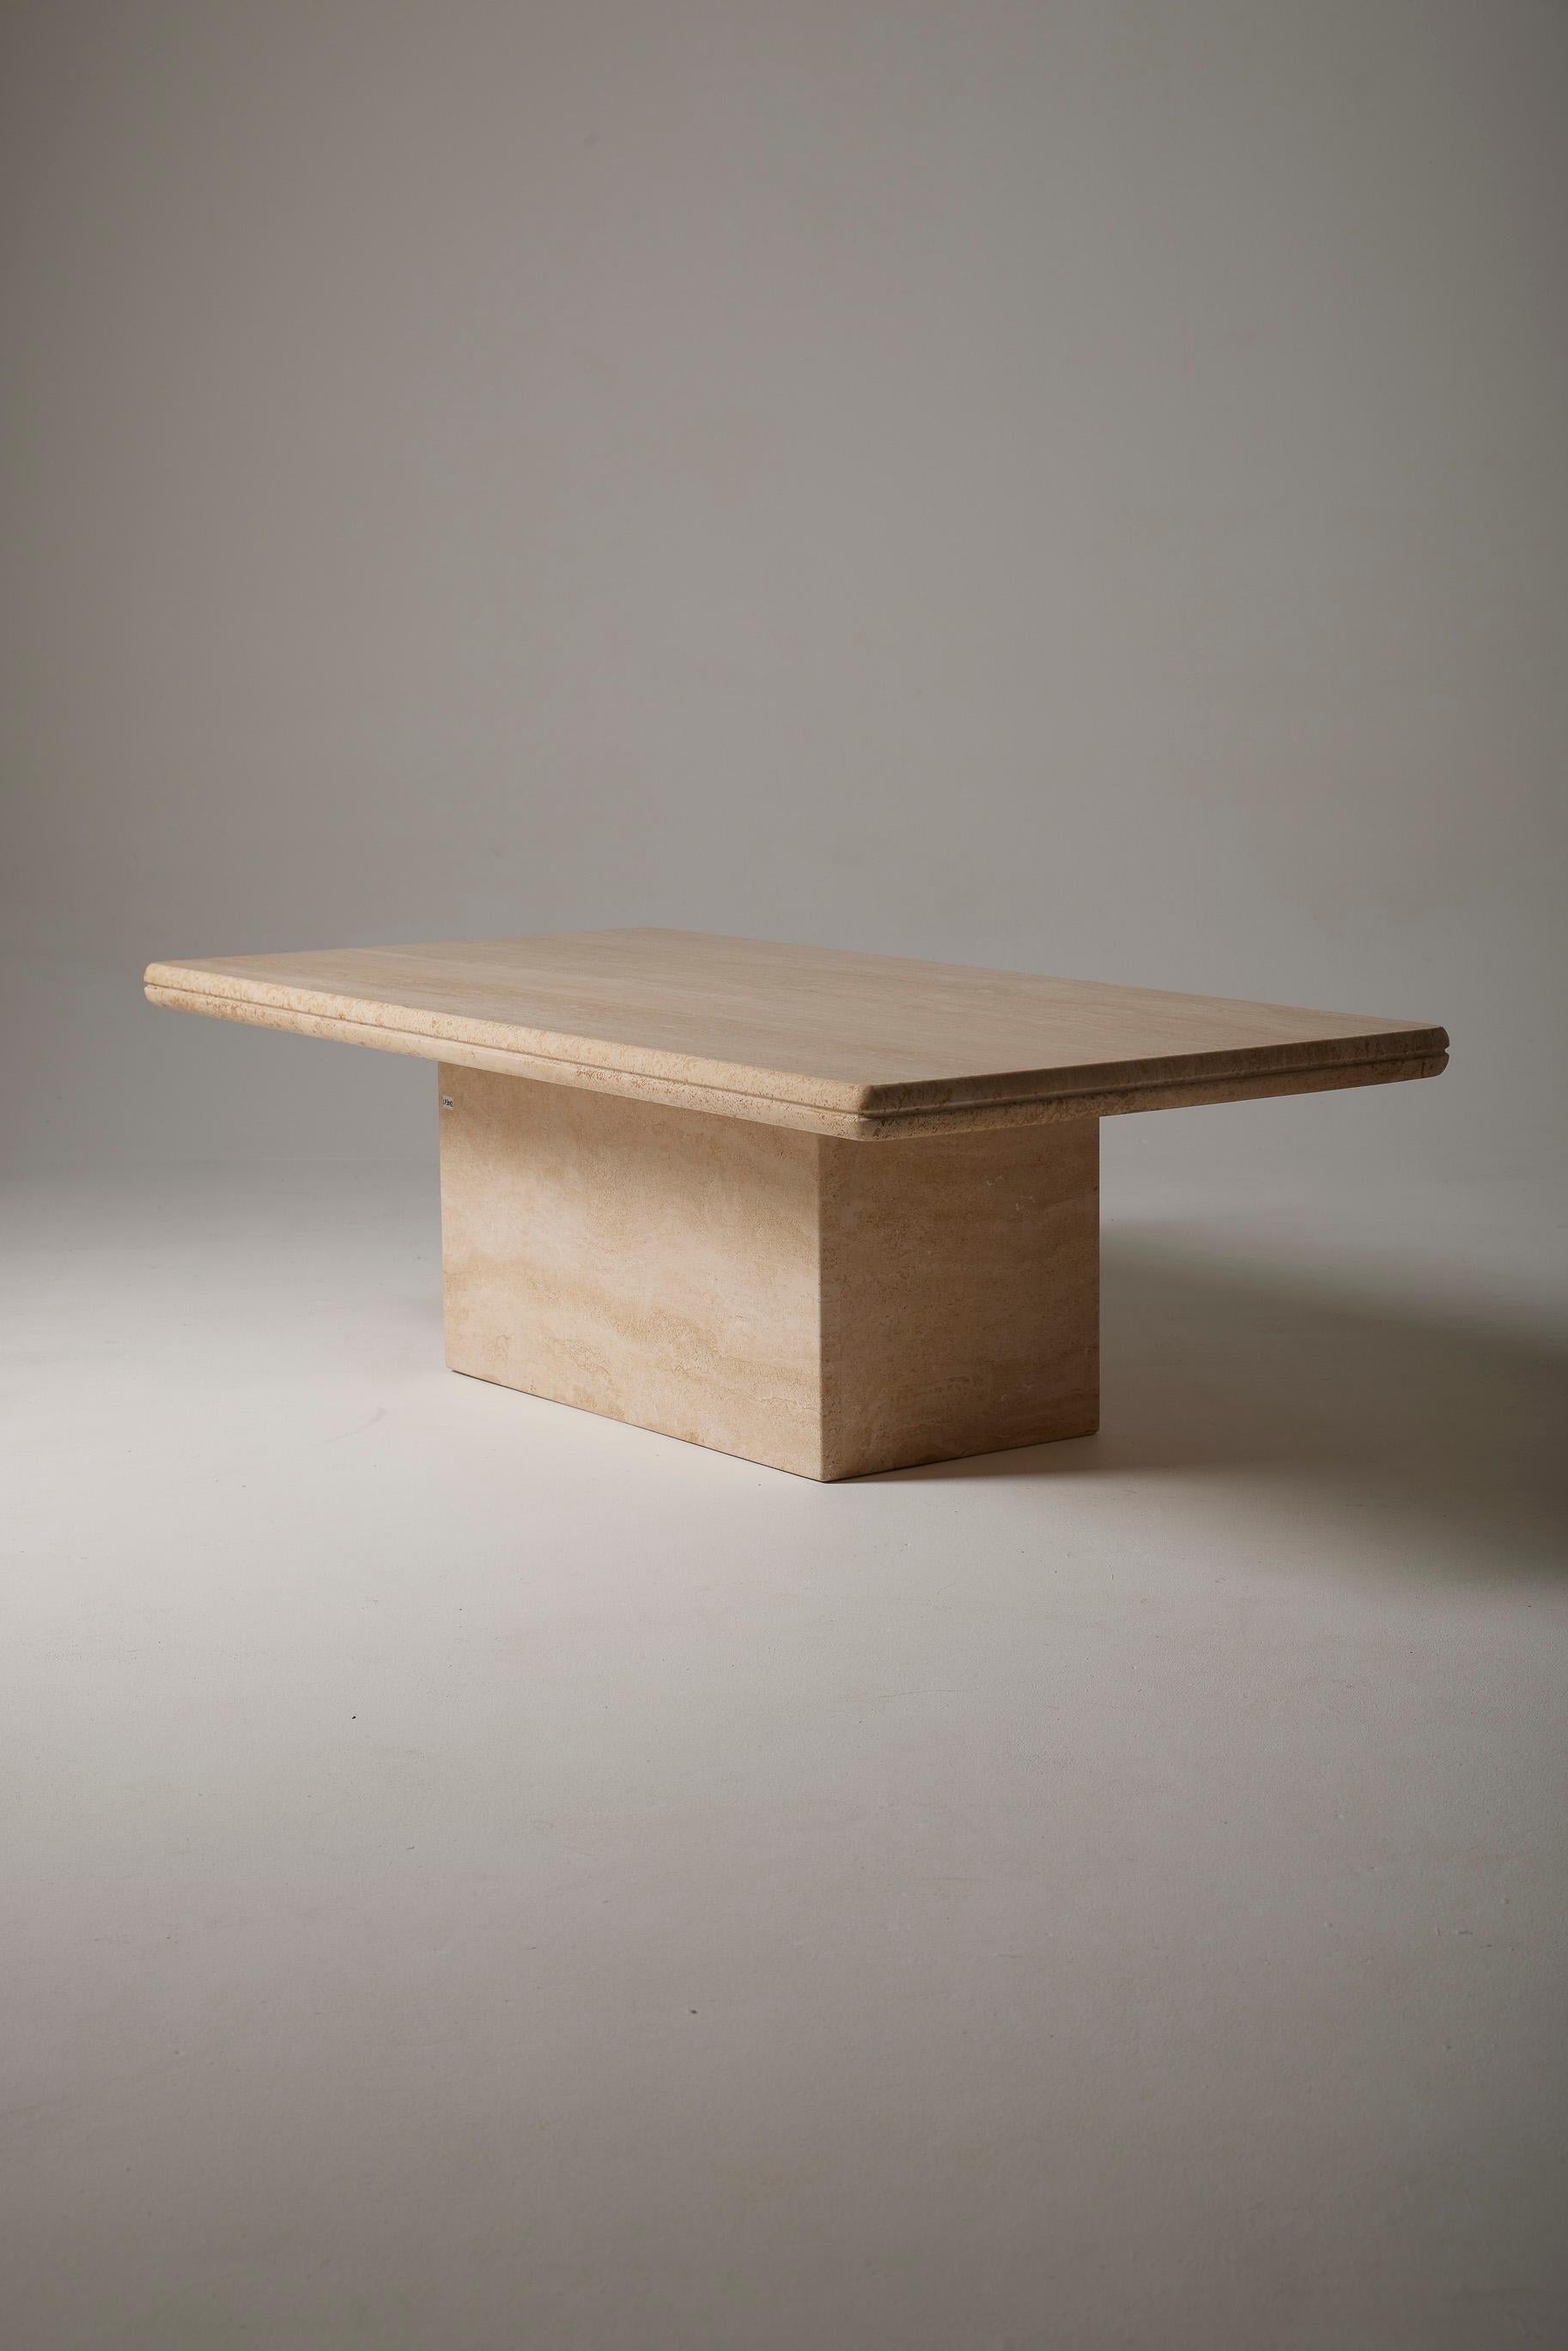  Table basse en travertin verni datant des années 1970. Cette table se compose d'un plateau rectangulaire reposant sur une base rectangulaire également. En très bon état.
LP3007